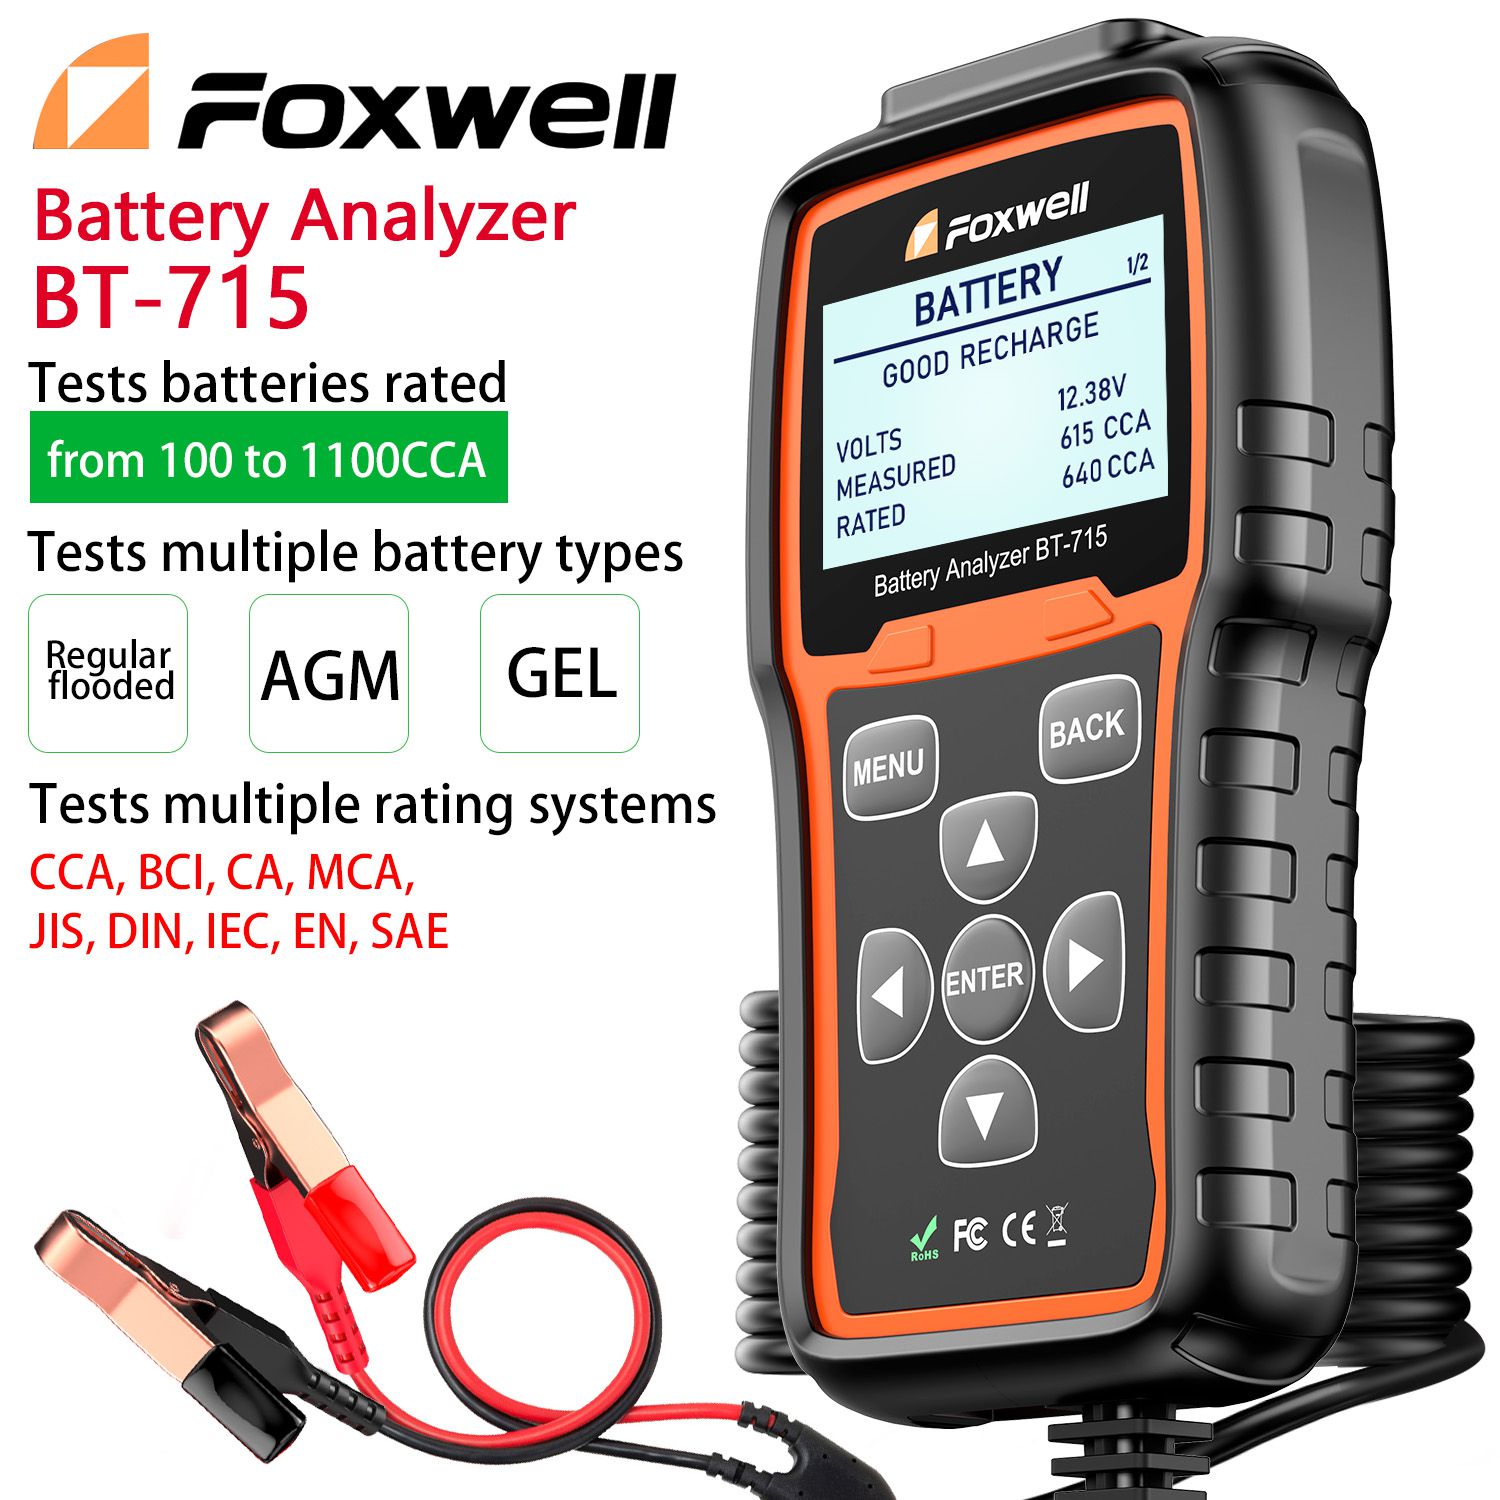 El analizador de batería foxwell BT - 715 admite la sustitución multilingüe de foxwell BT - 705